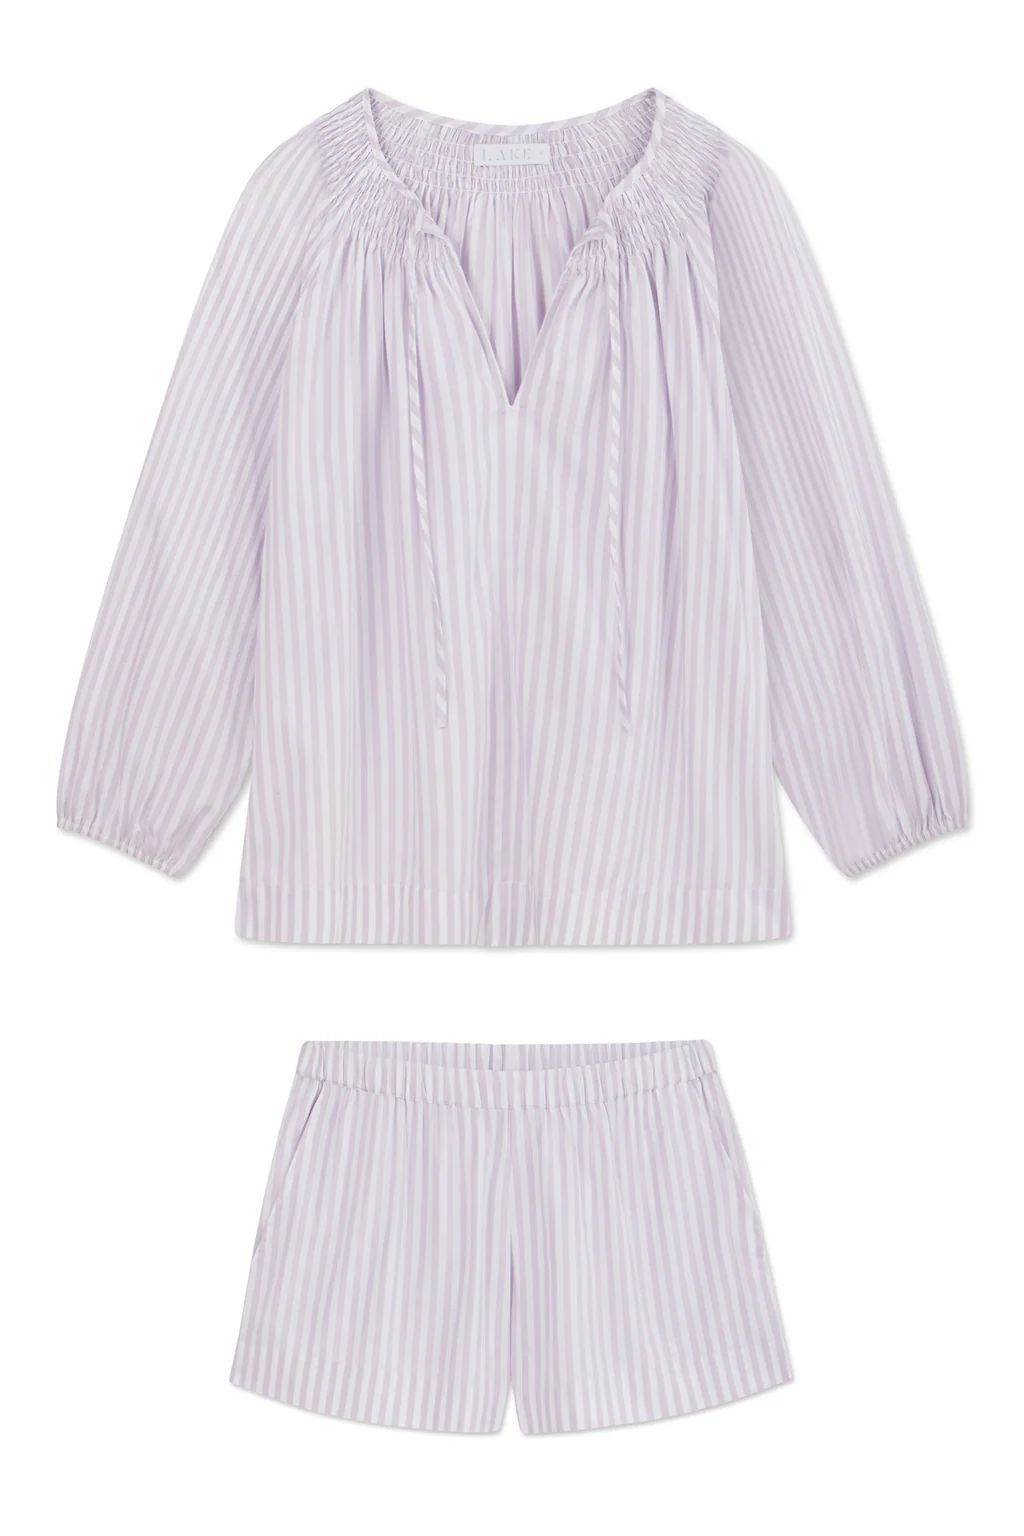 Hammock Shorts Set in Lilac Stripe | Lake Pajamas